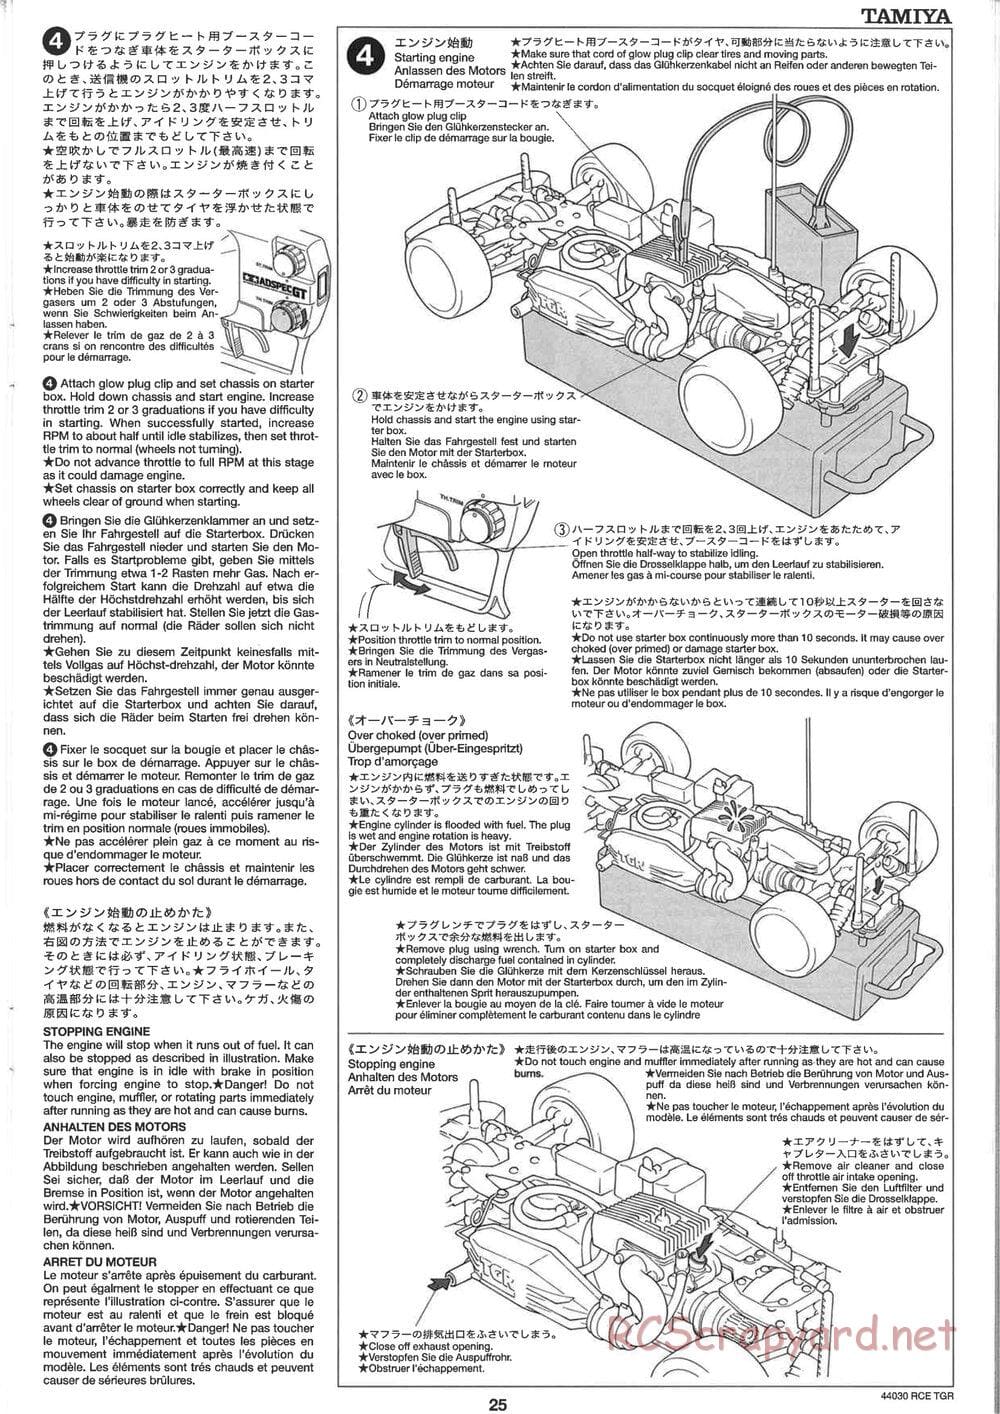 Tamiya - TGR Chassis - Manual - Page 25